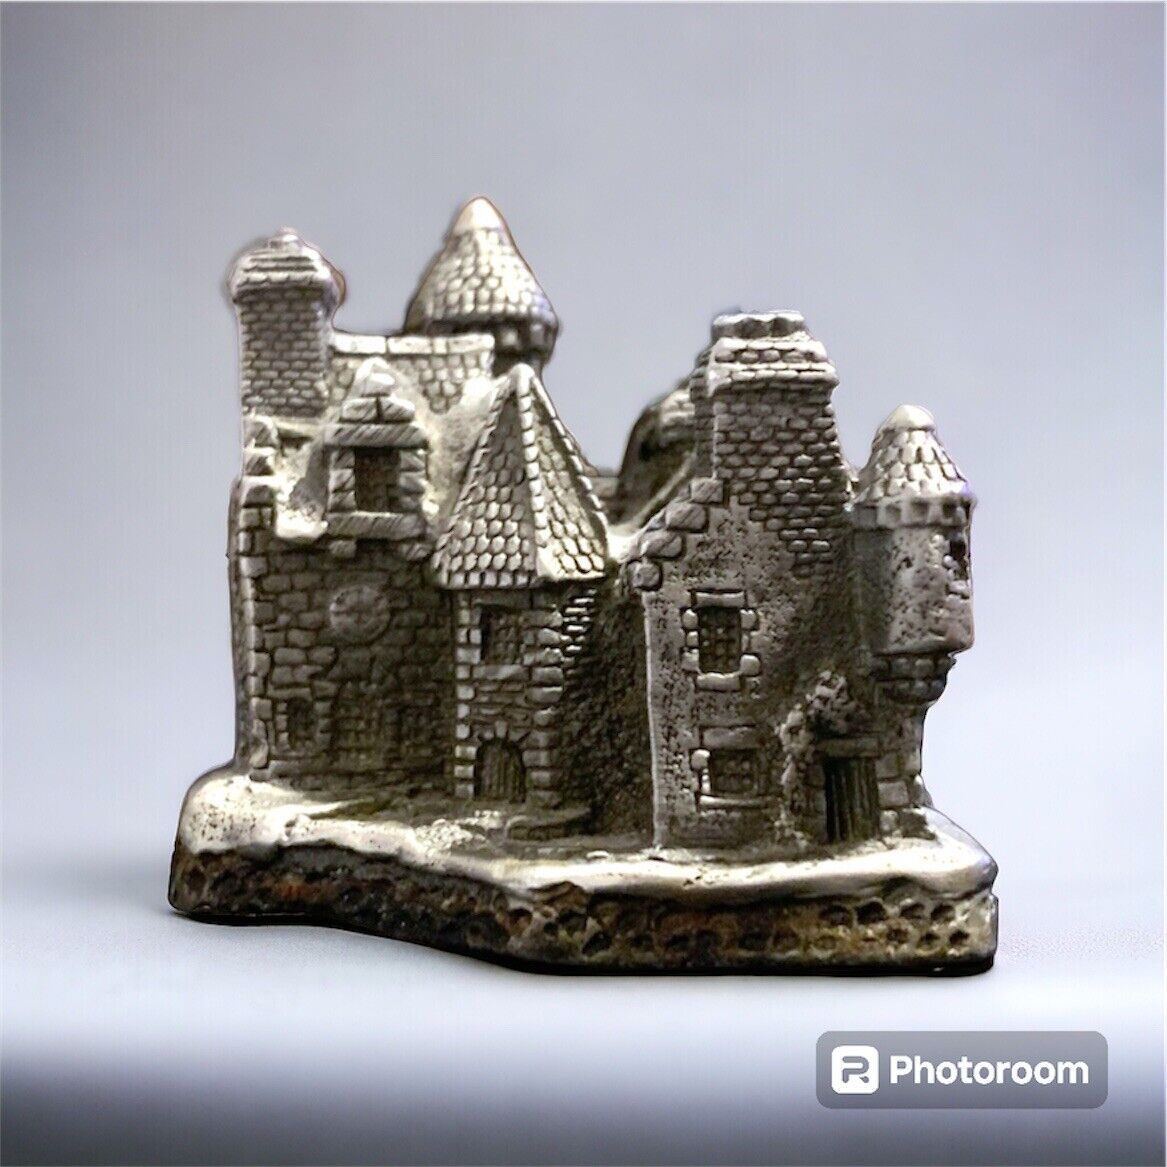 Vintage Fine Pewter Castle Figurine 2”x 2”x 2” 220 Grams